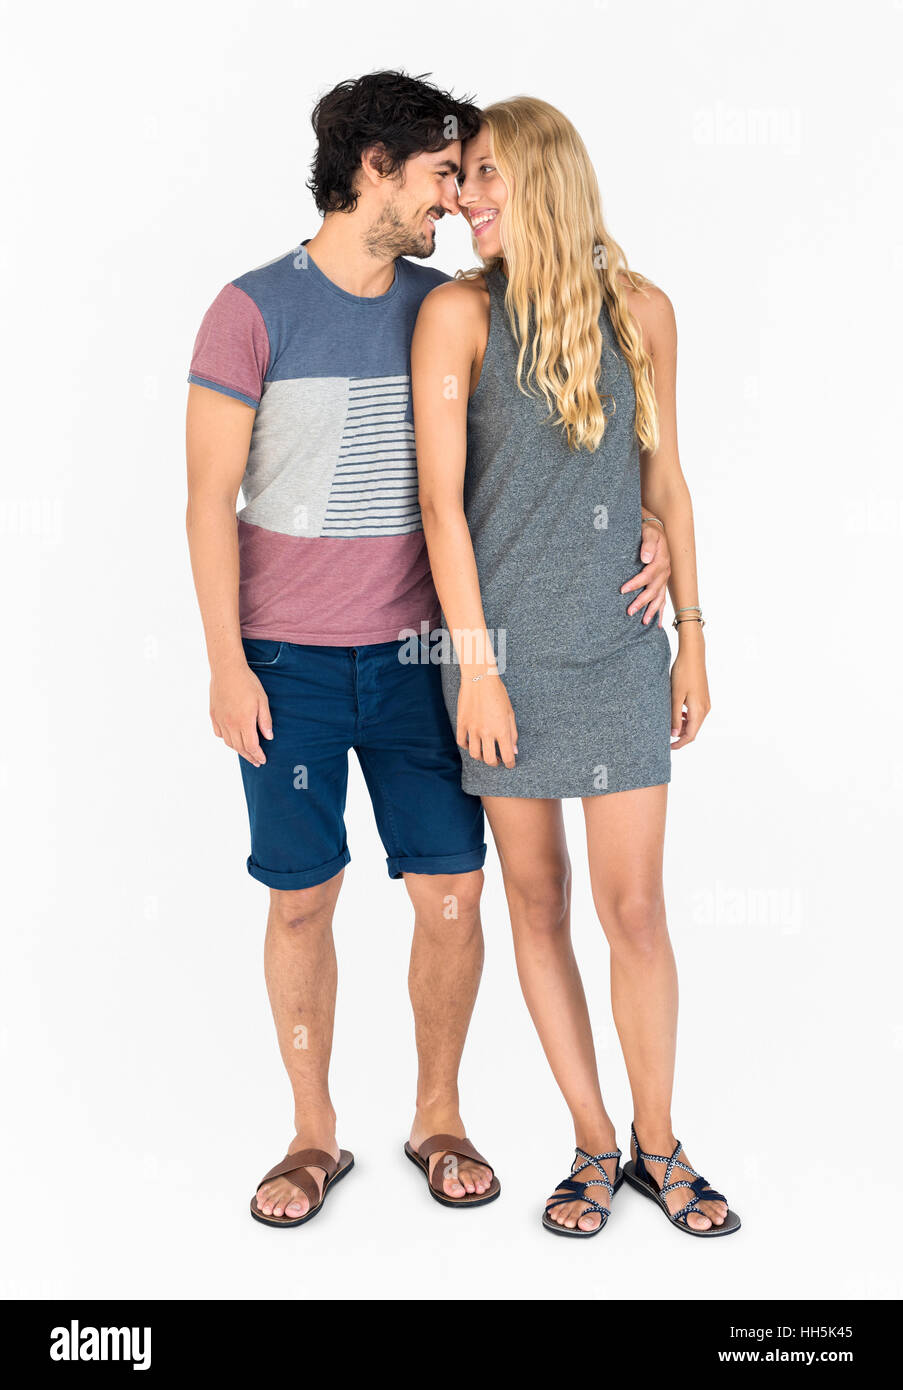 Couple Casual Attire Studio Concept Stock Photo